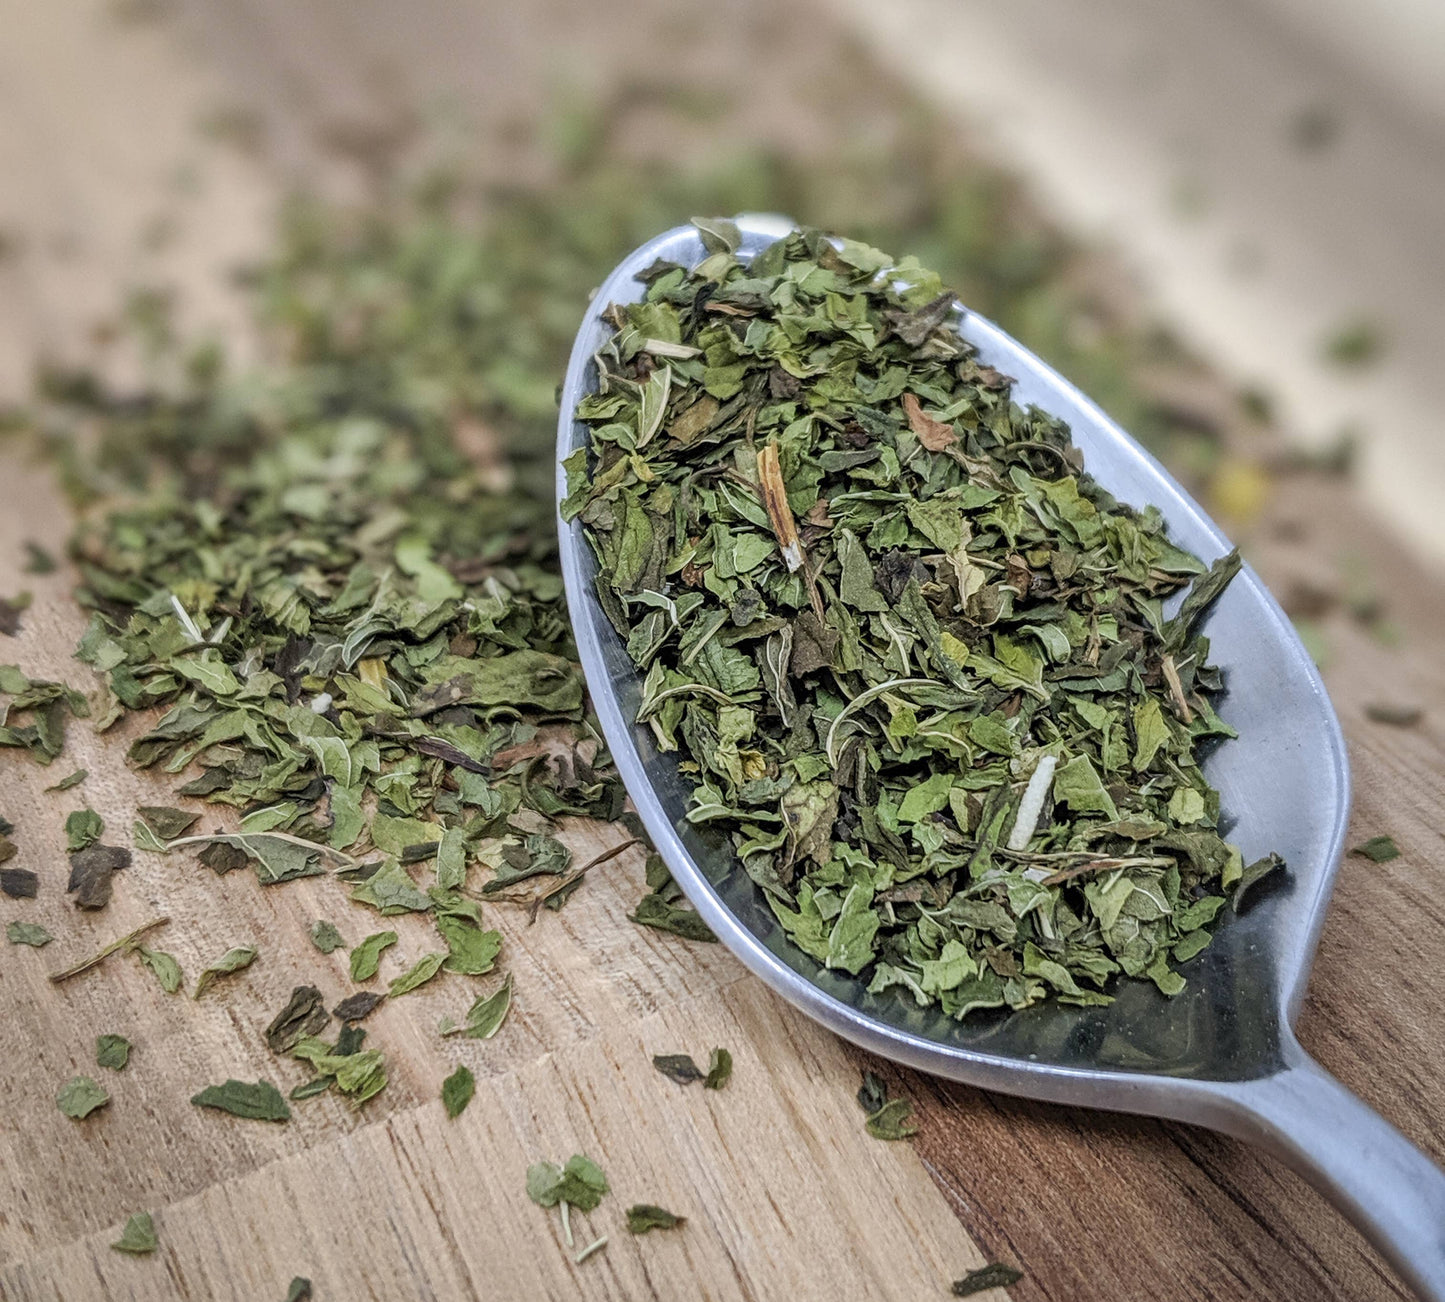 Spearmint | Loose Leaf Herbal Tea | .2oz